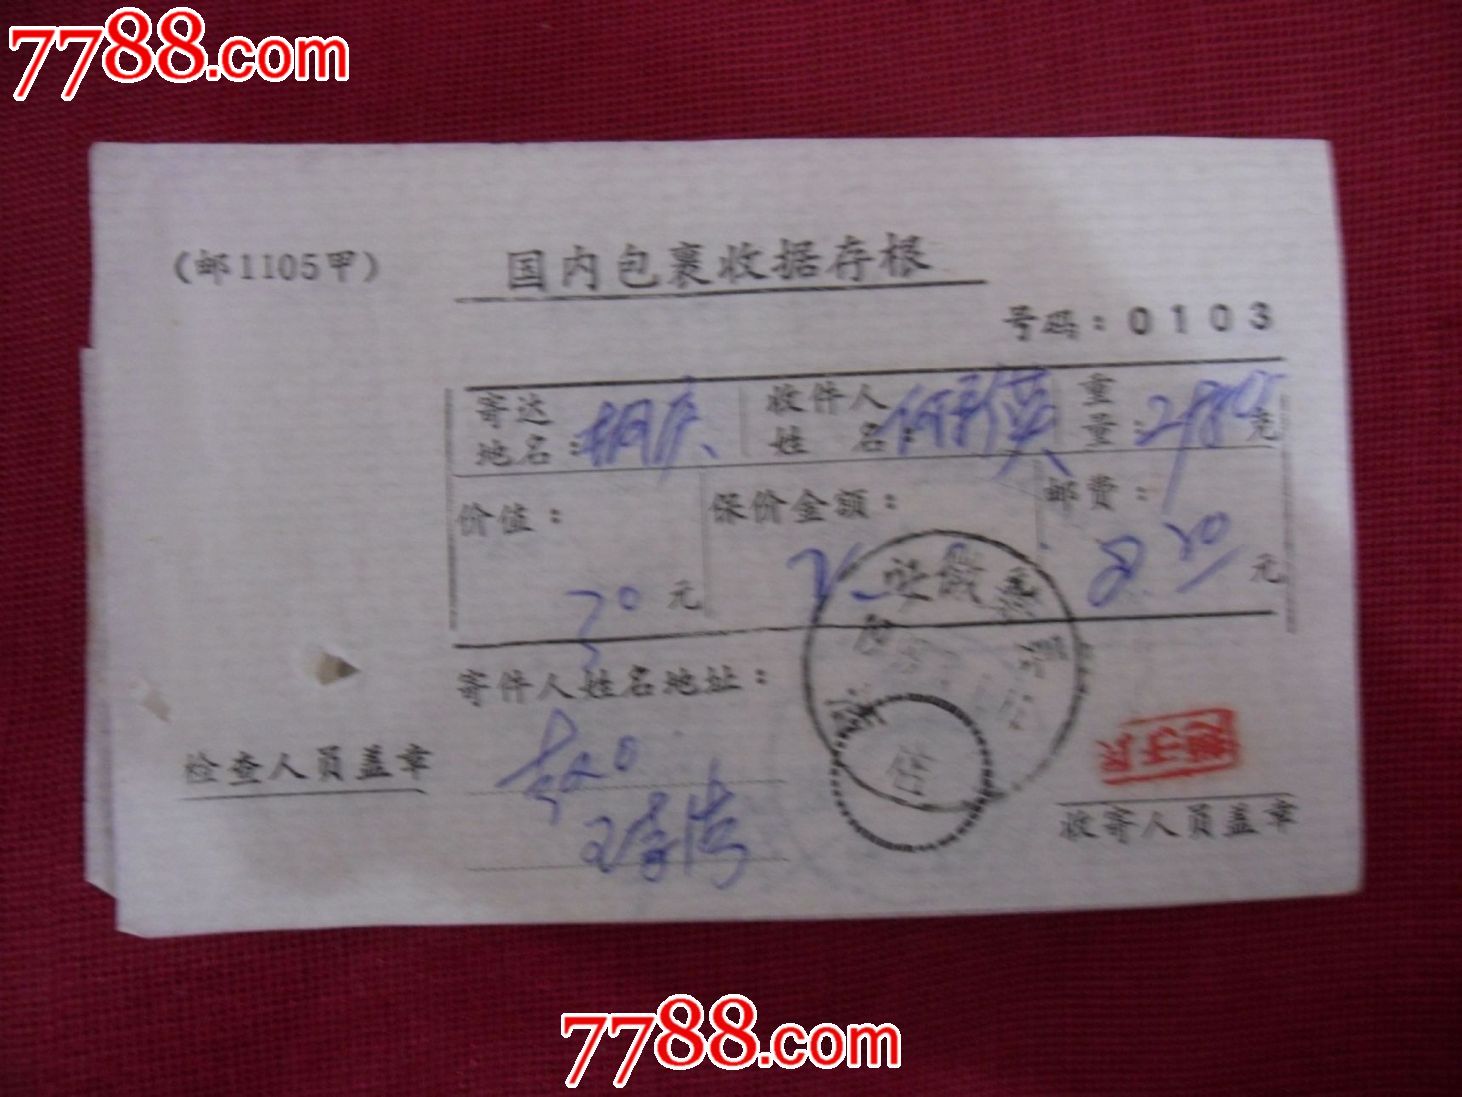 (1105甲)盖安徽萧县酒店戳国内包裹收据存根